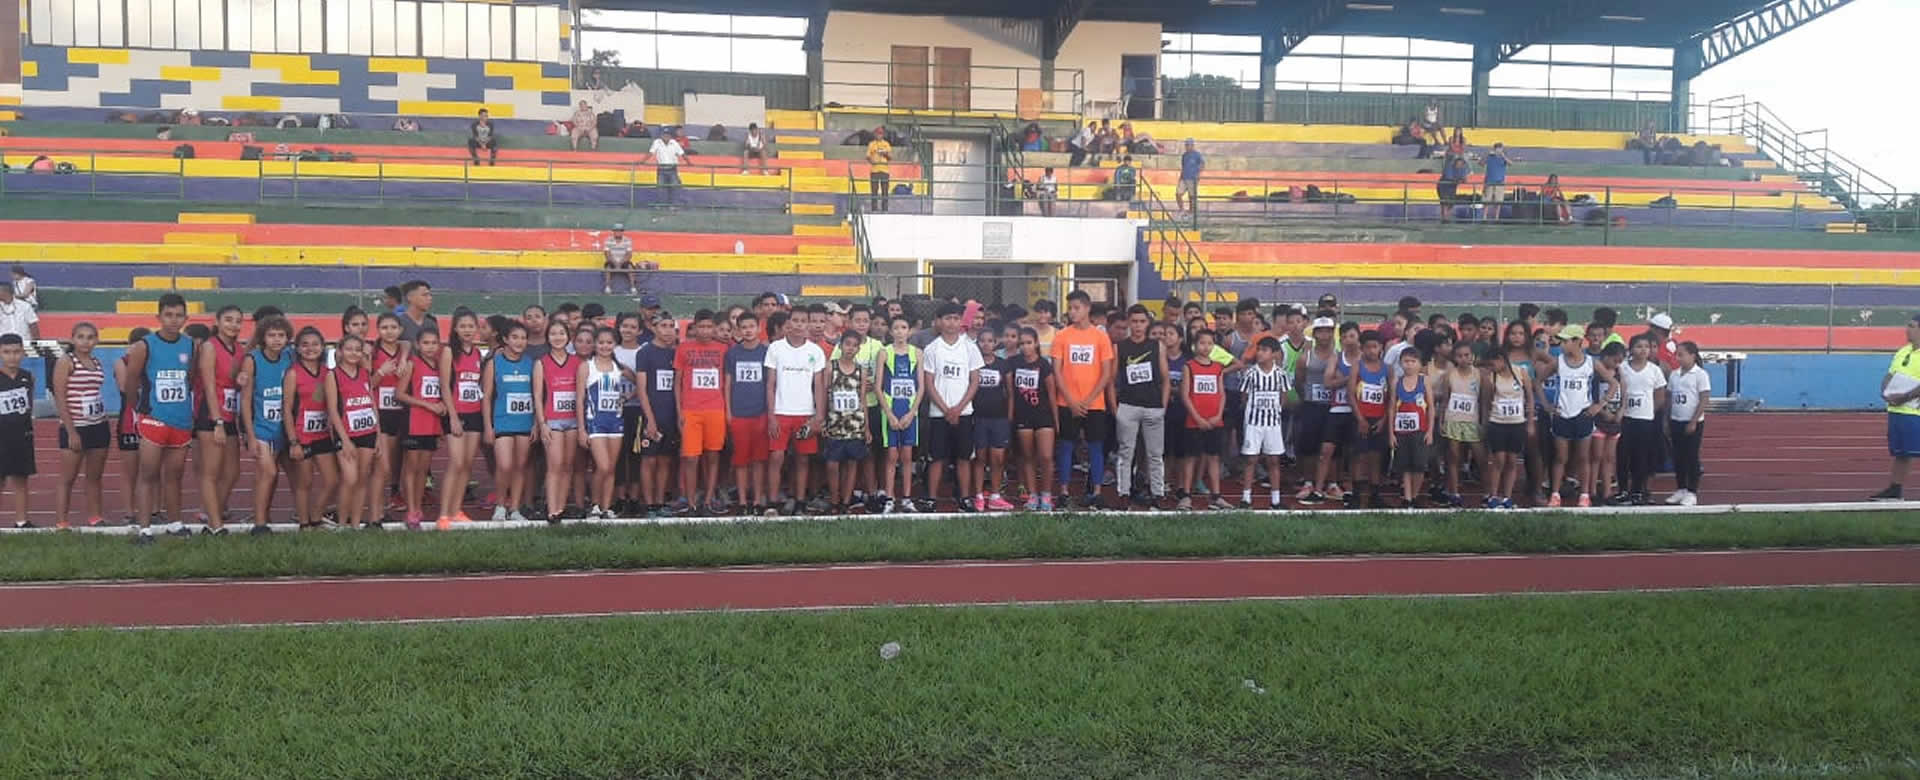 Niños, niñas y adolescentes dan inicio al Campeonato Nacional de Atletismo